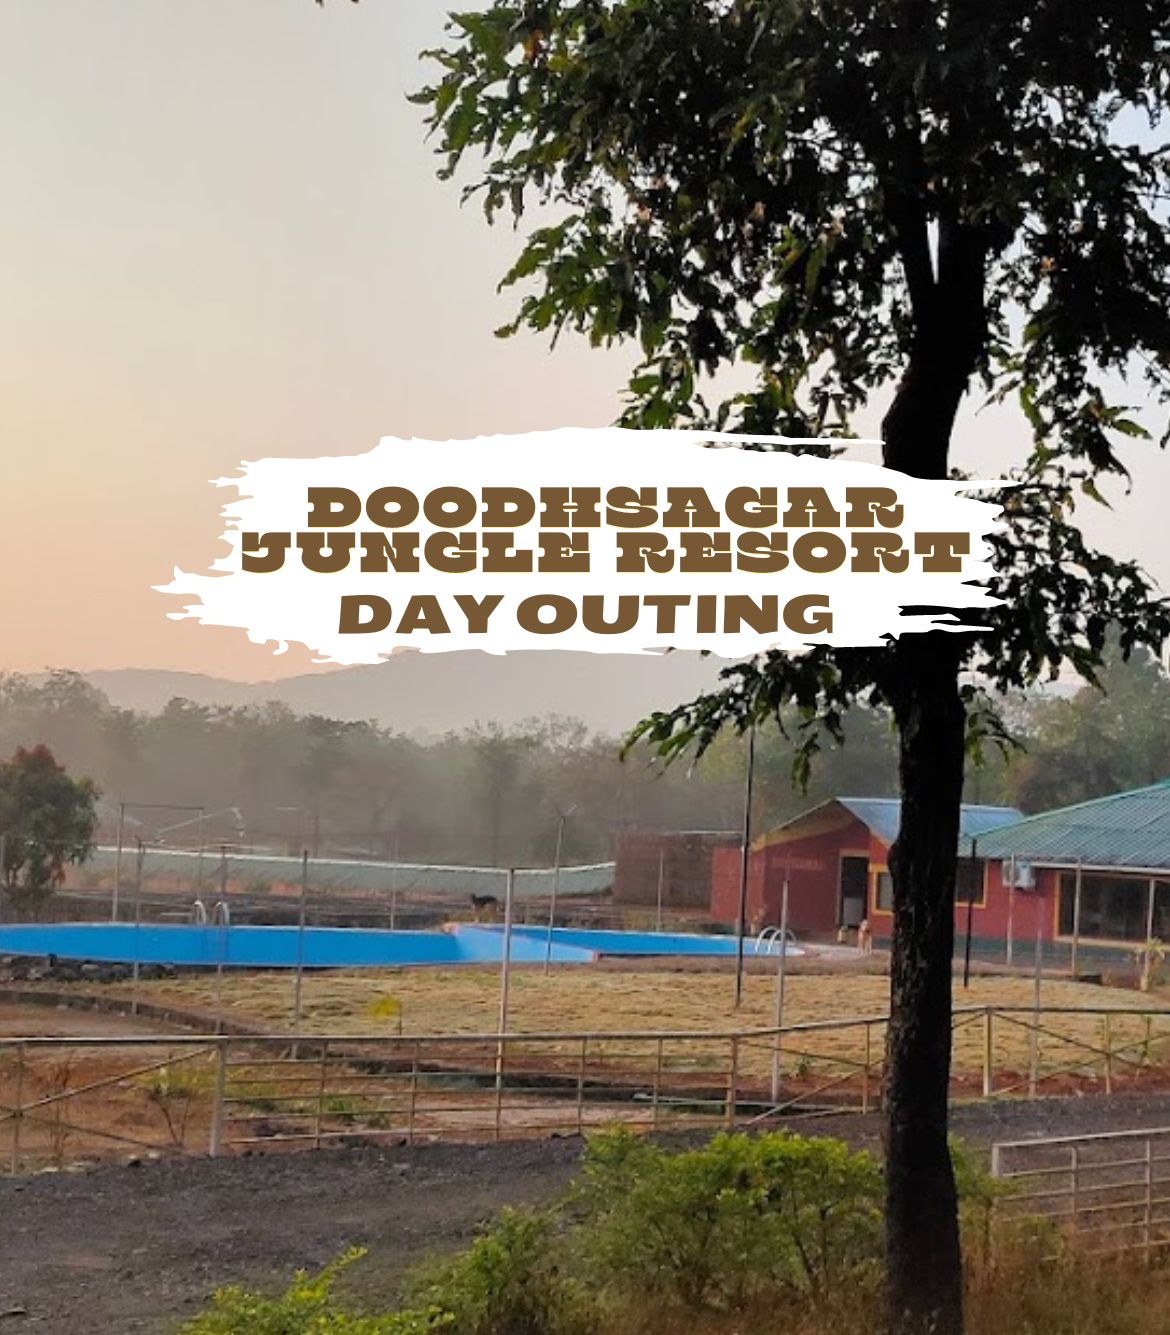 Day Outing at Doodhsagar Jungle Resort